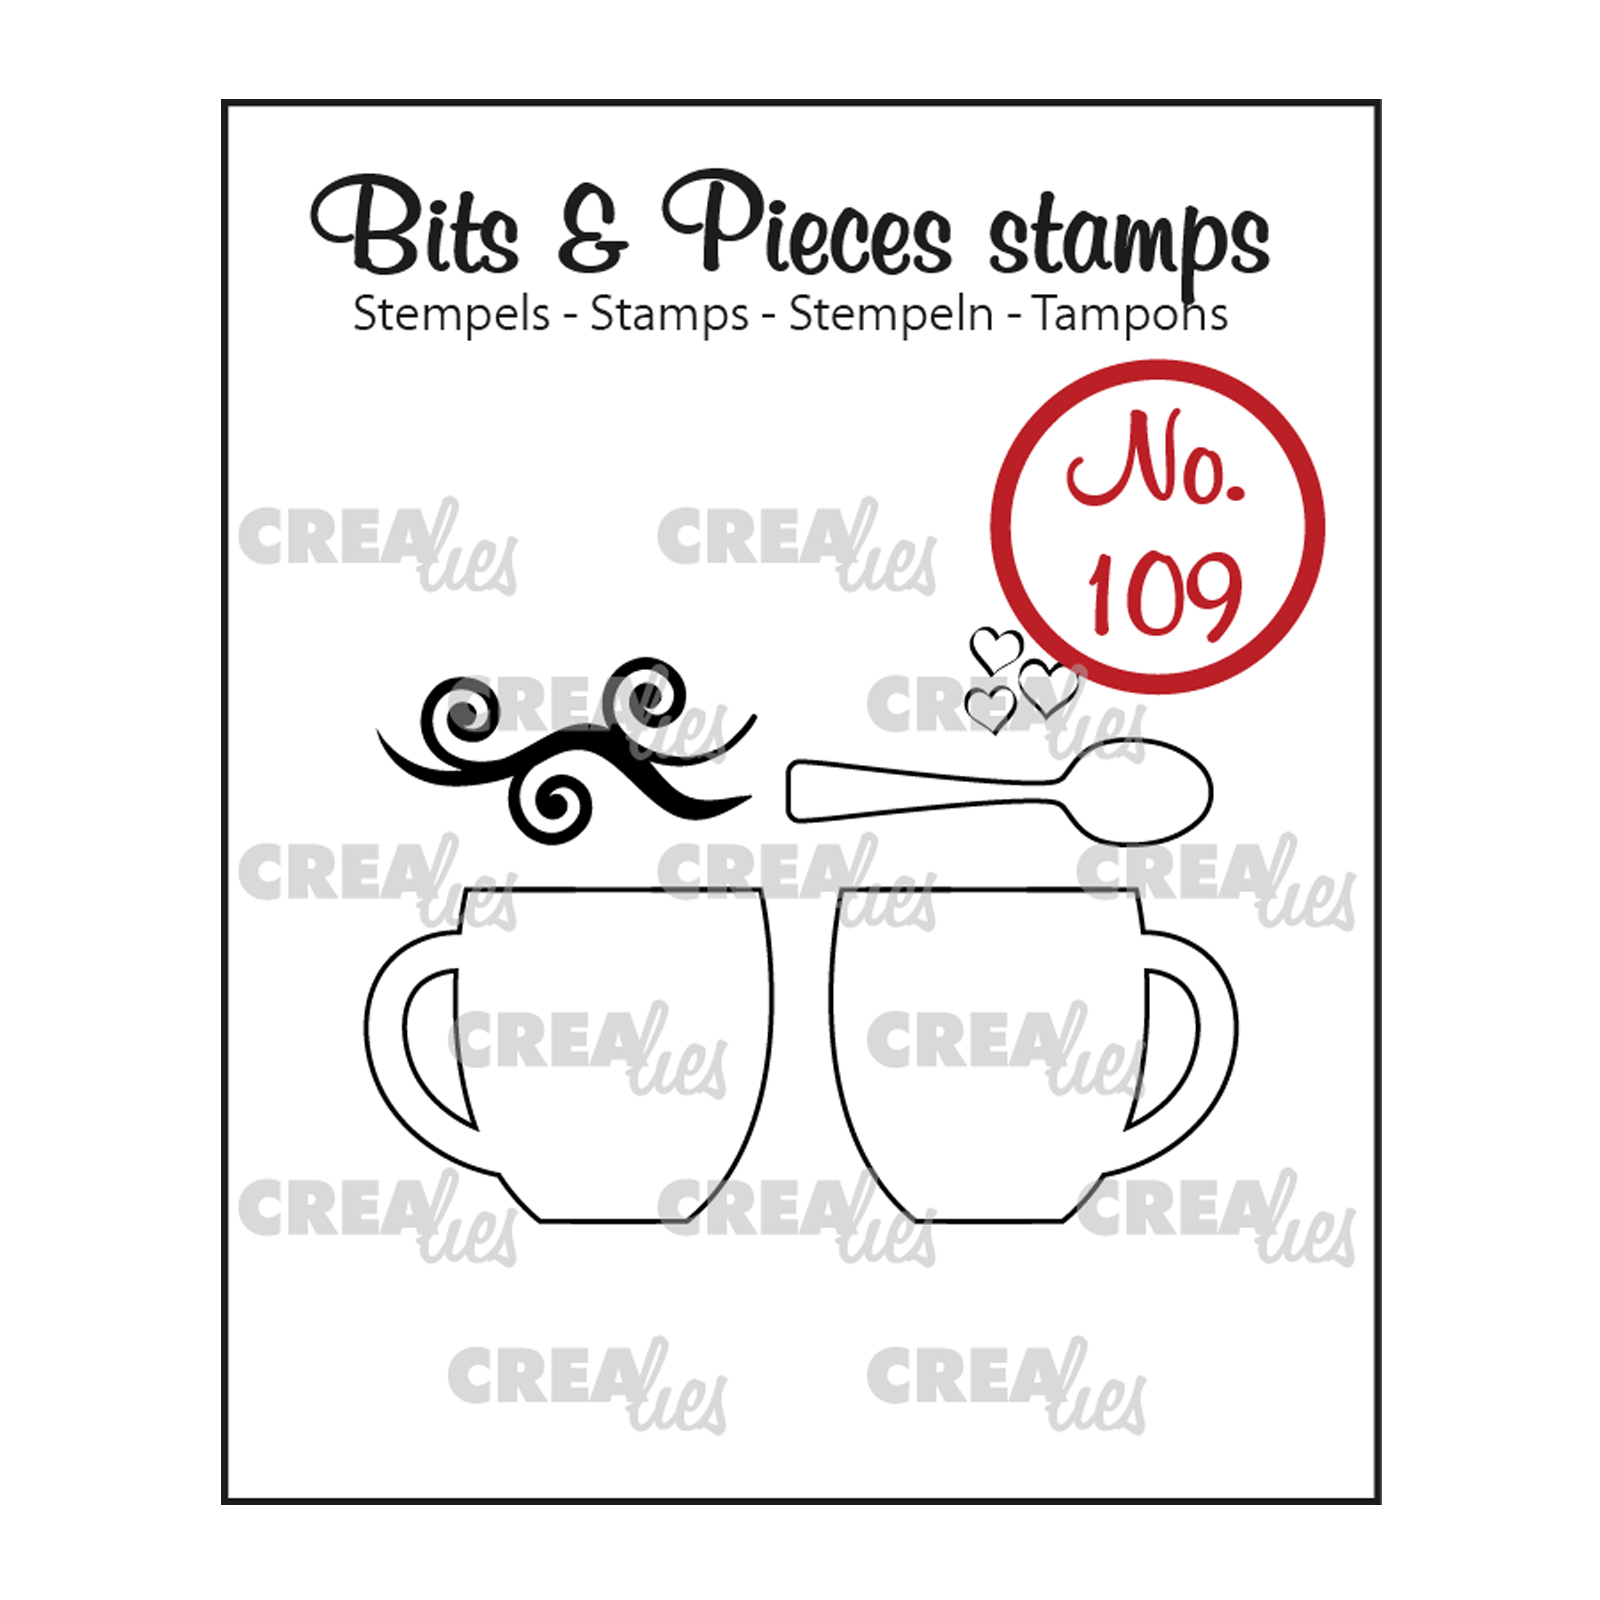 Crealies • Bits & Pieces sello No.109 2 Mugs + spoon